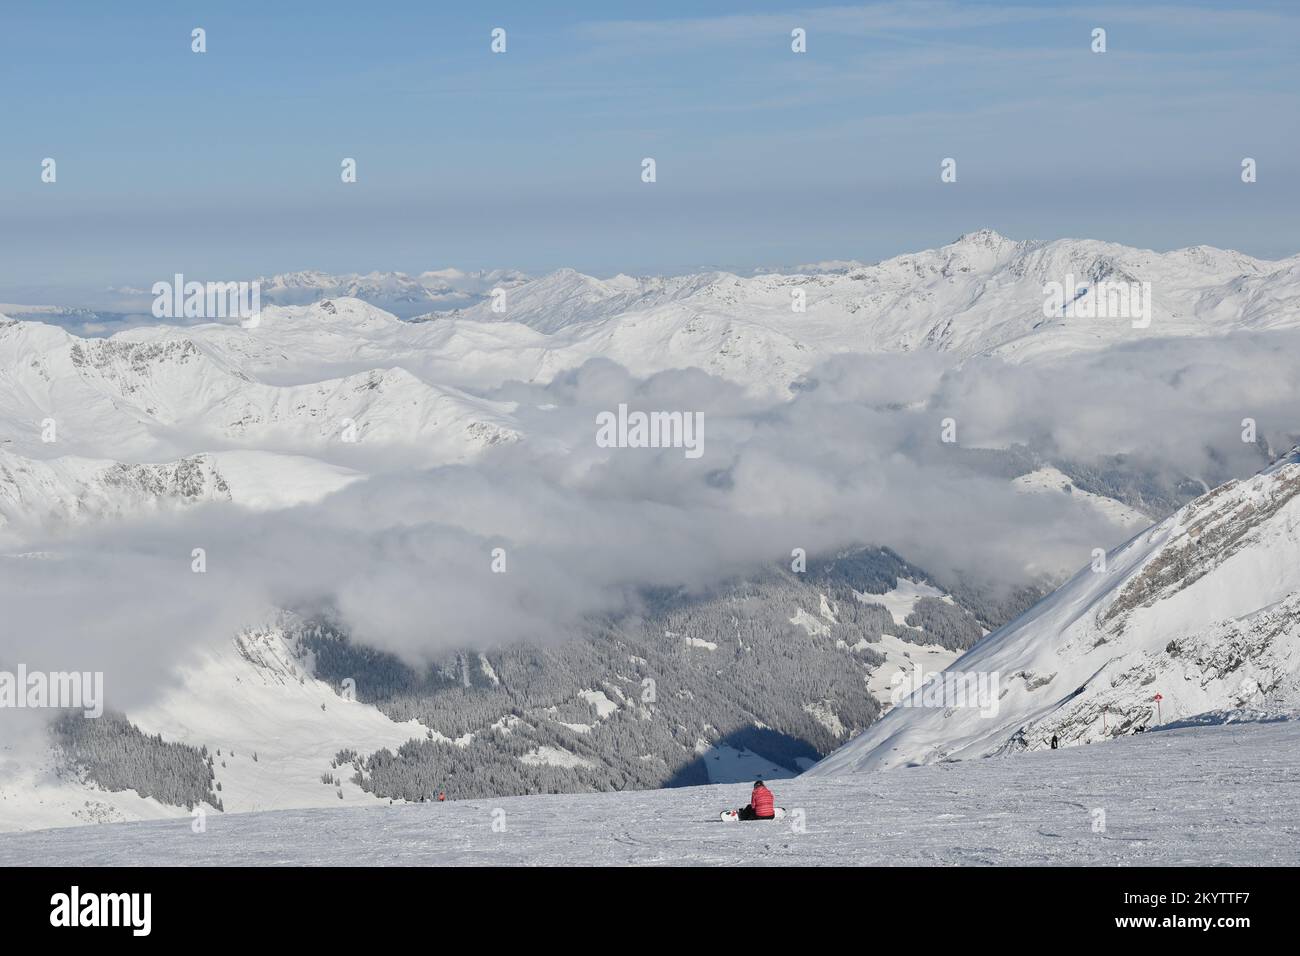 Einsamer Snowboarder, der auf einem Schnee sitzt und im Hintergrund die Winter bedeckten Berge bestaunt Stockfoto